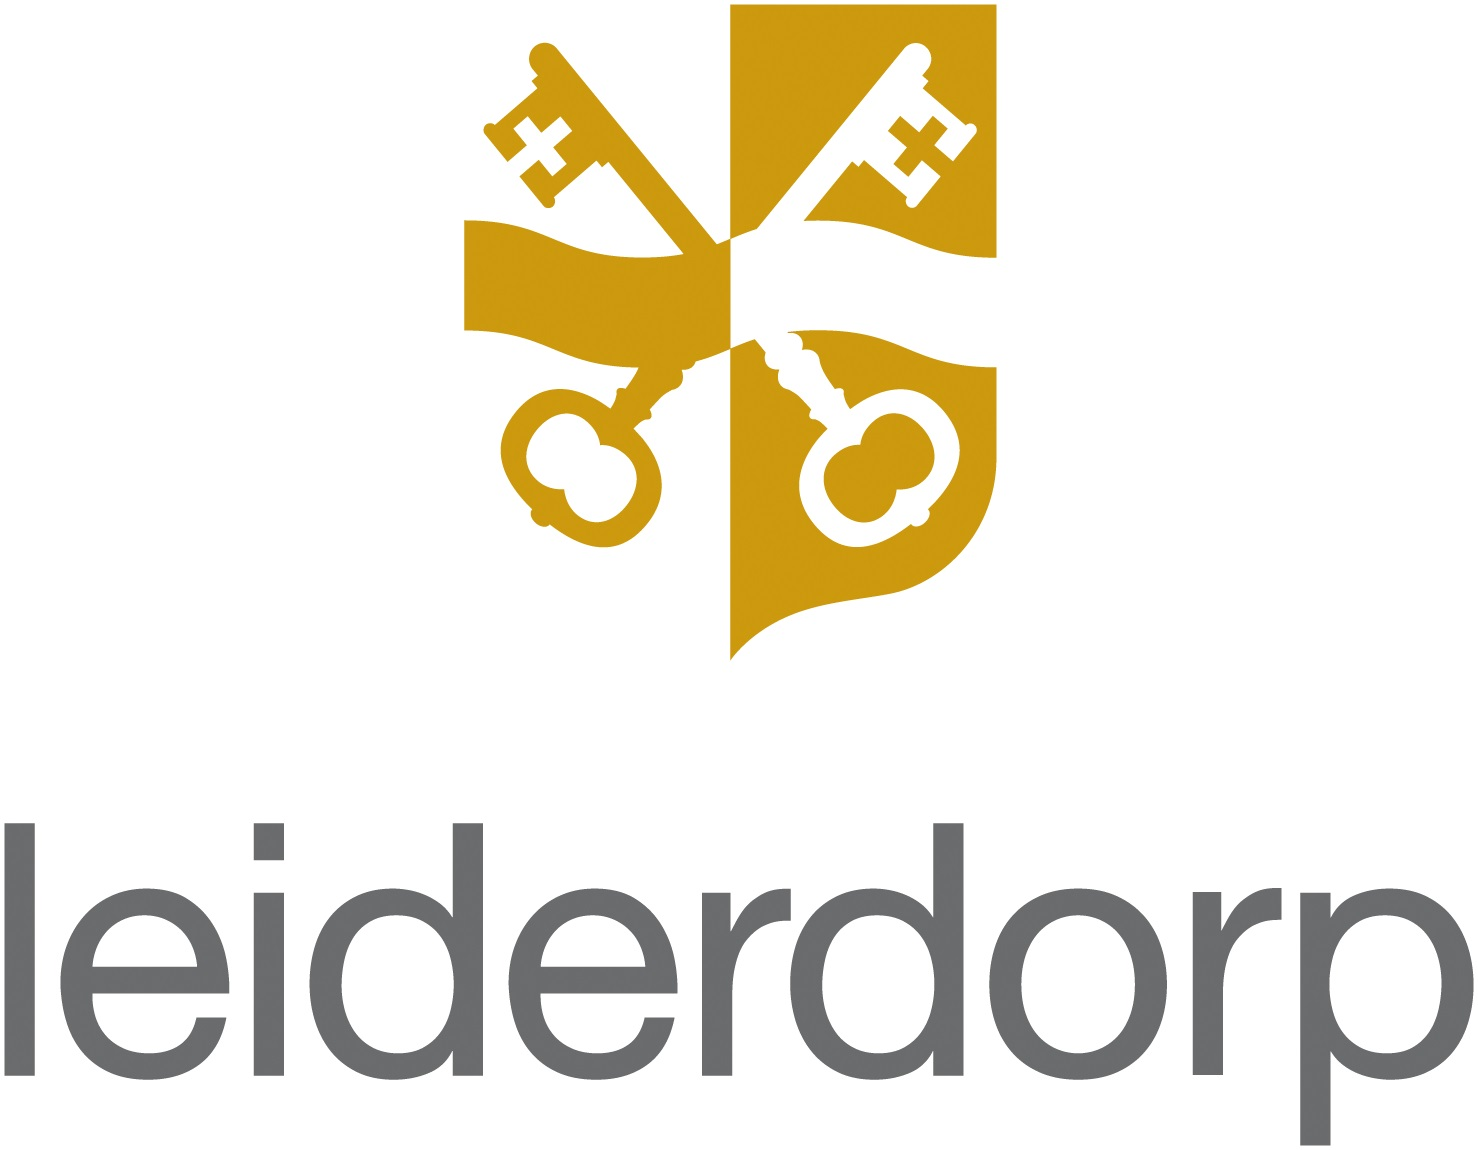 Logo van gemeente Leiderdorp